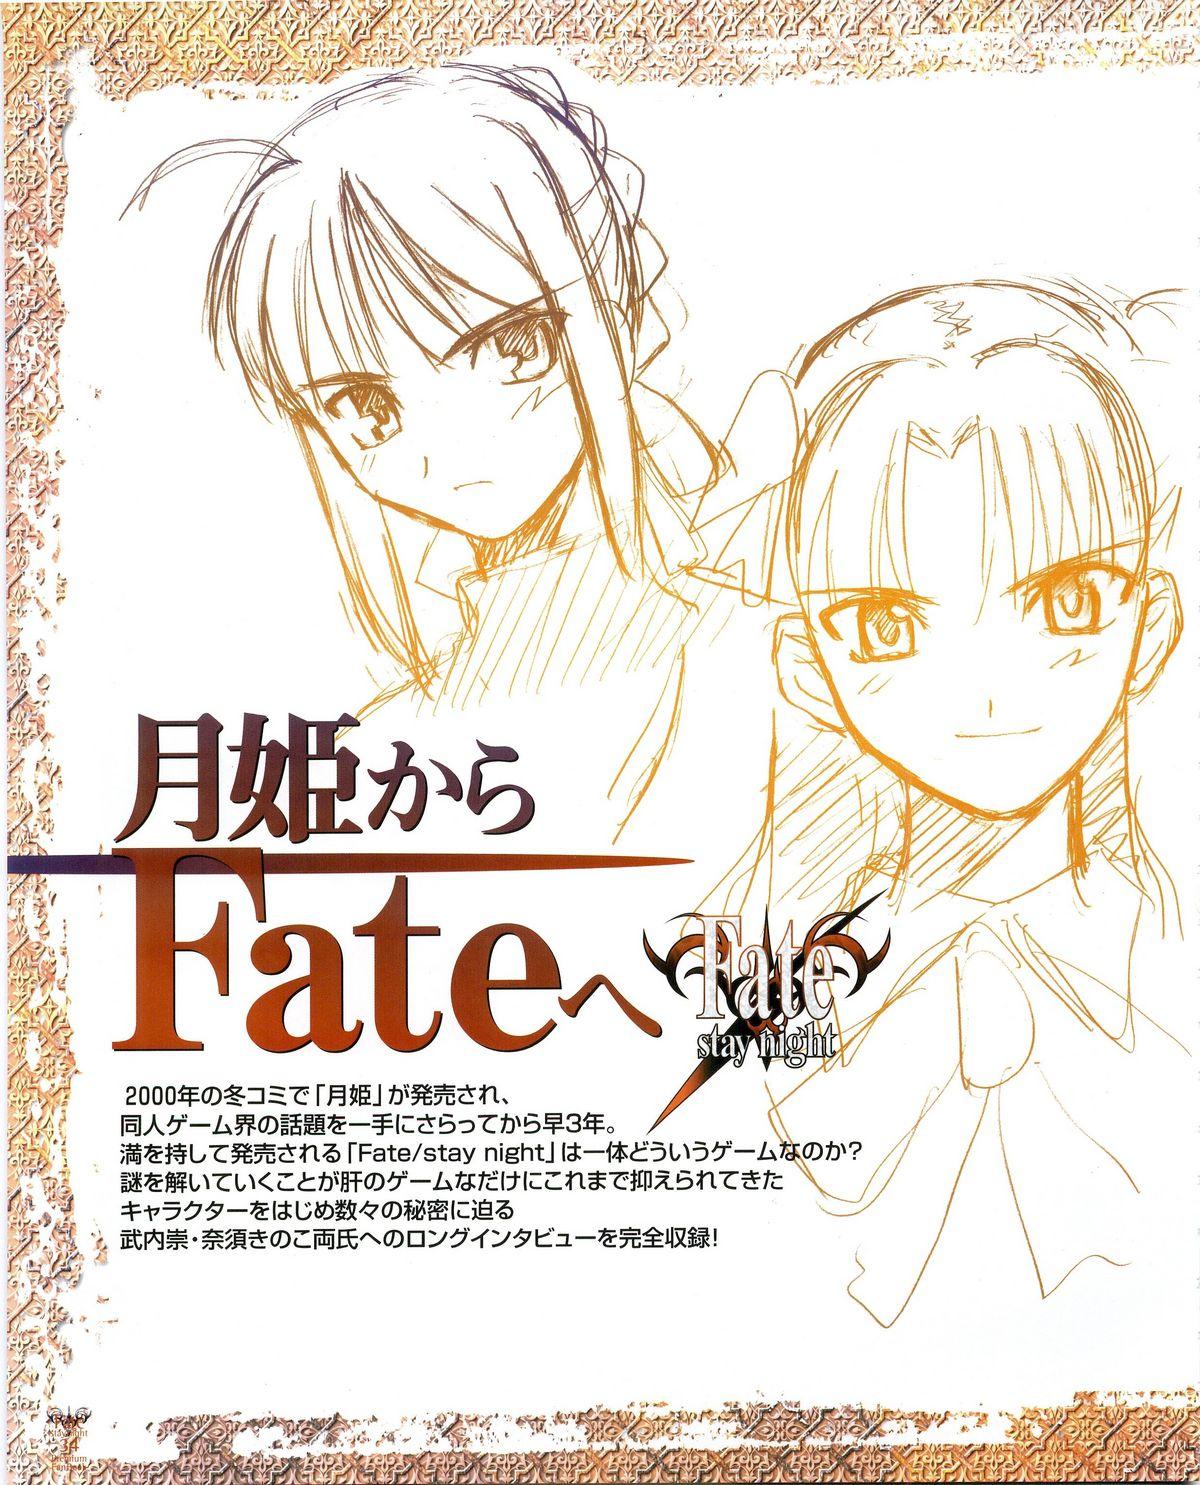 Fate/stay night Premium FanBook 25